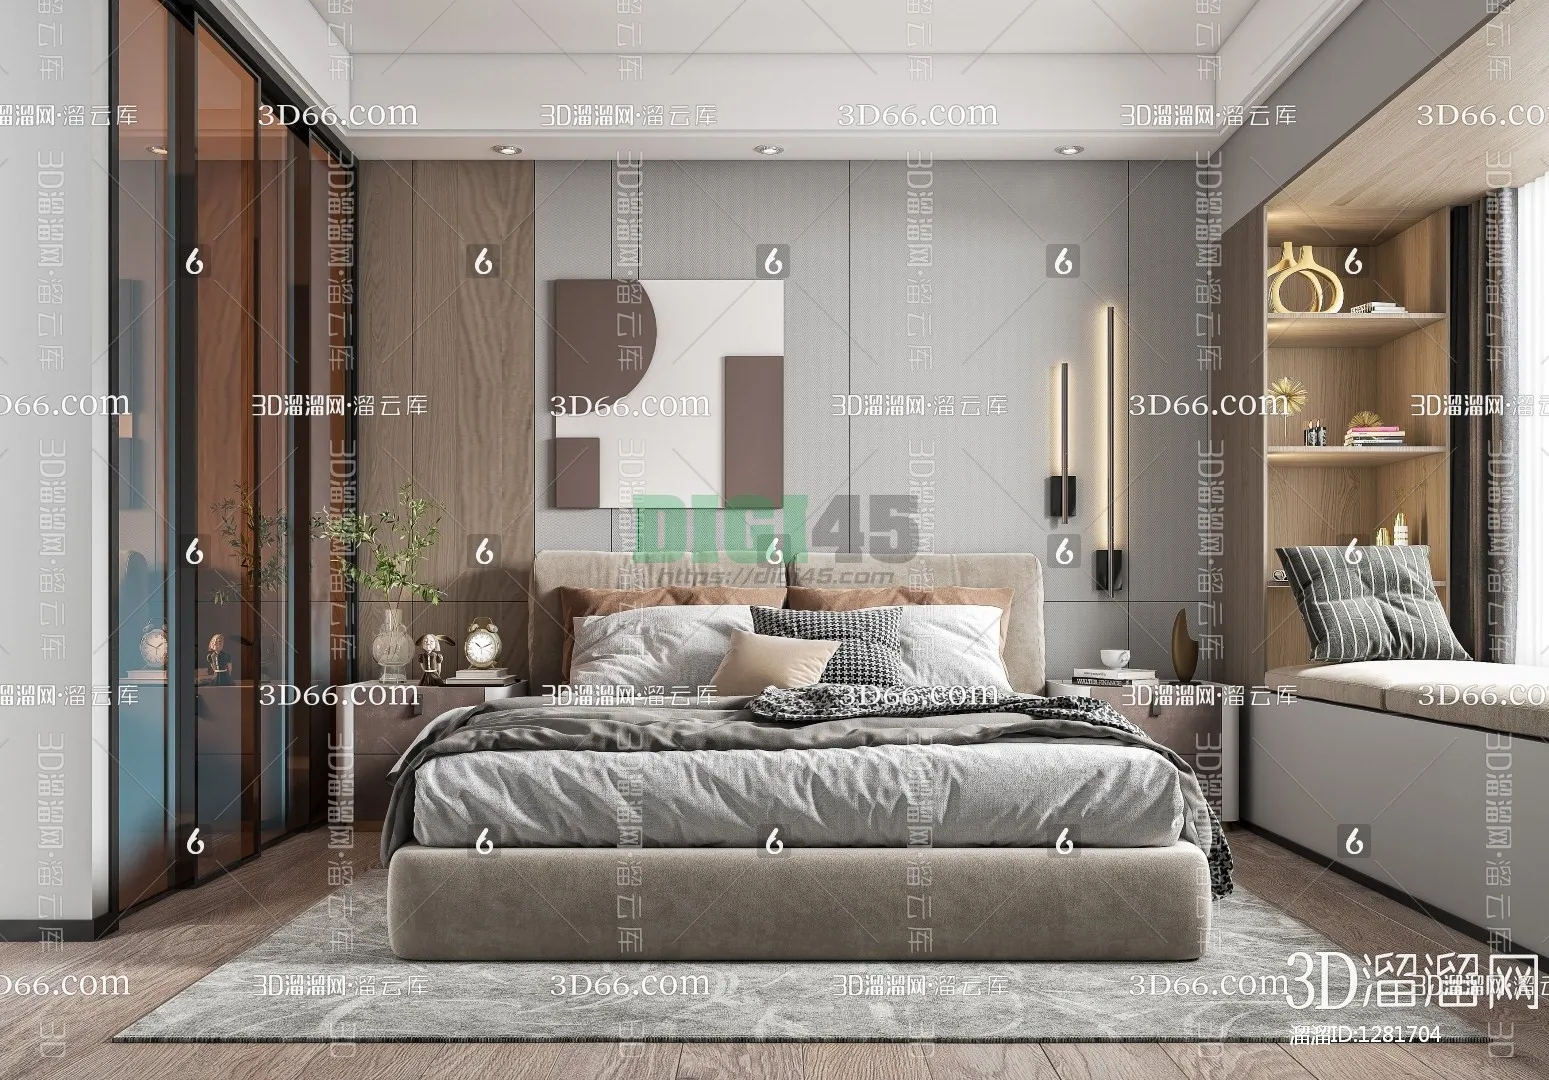 Bedroom 3D Scenes – 1132